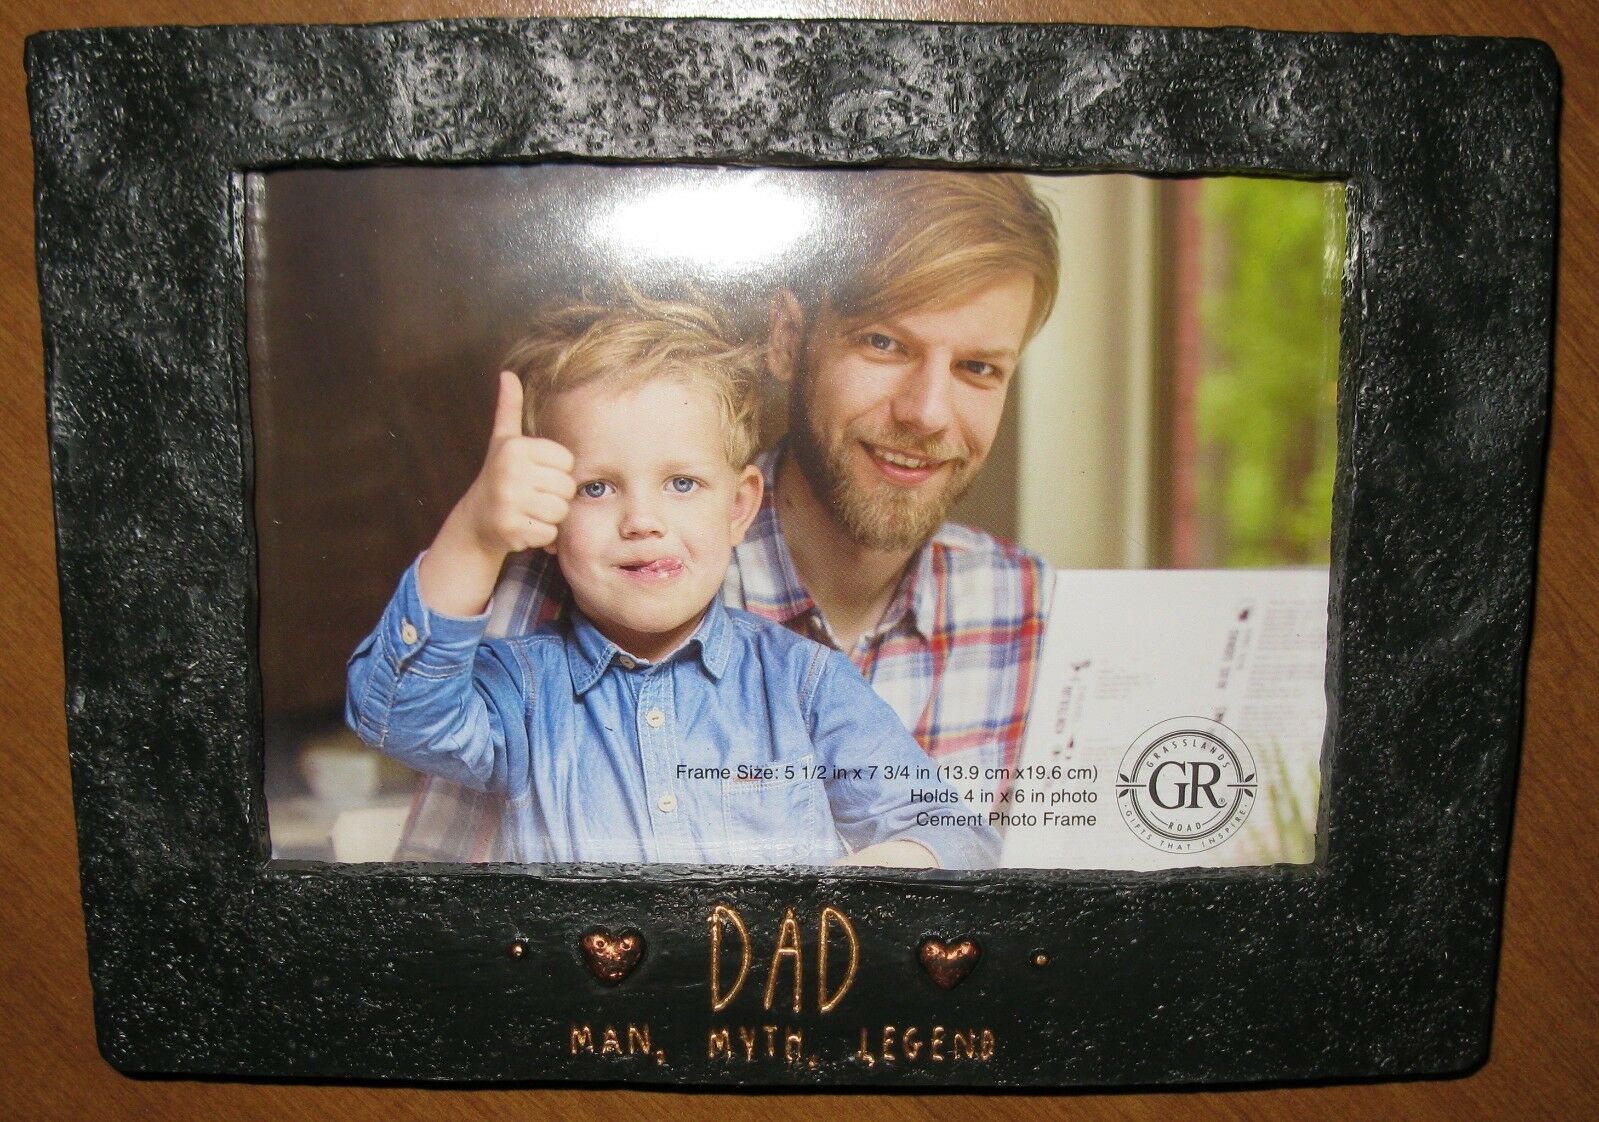 GRASSLANDS ROAD 4" X 6" "DAD MAN MYTH LEGEND" PHOTO FRAME FATHER'S DAY NIB - $16.82